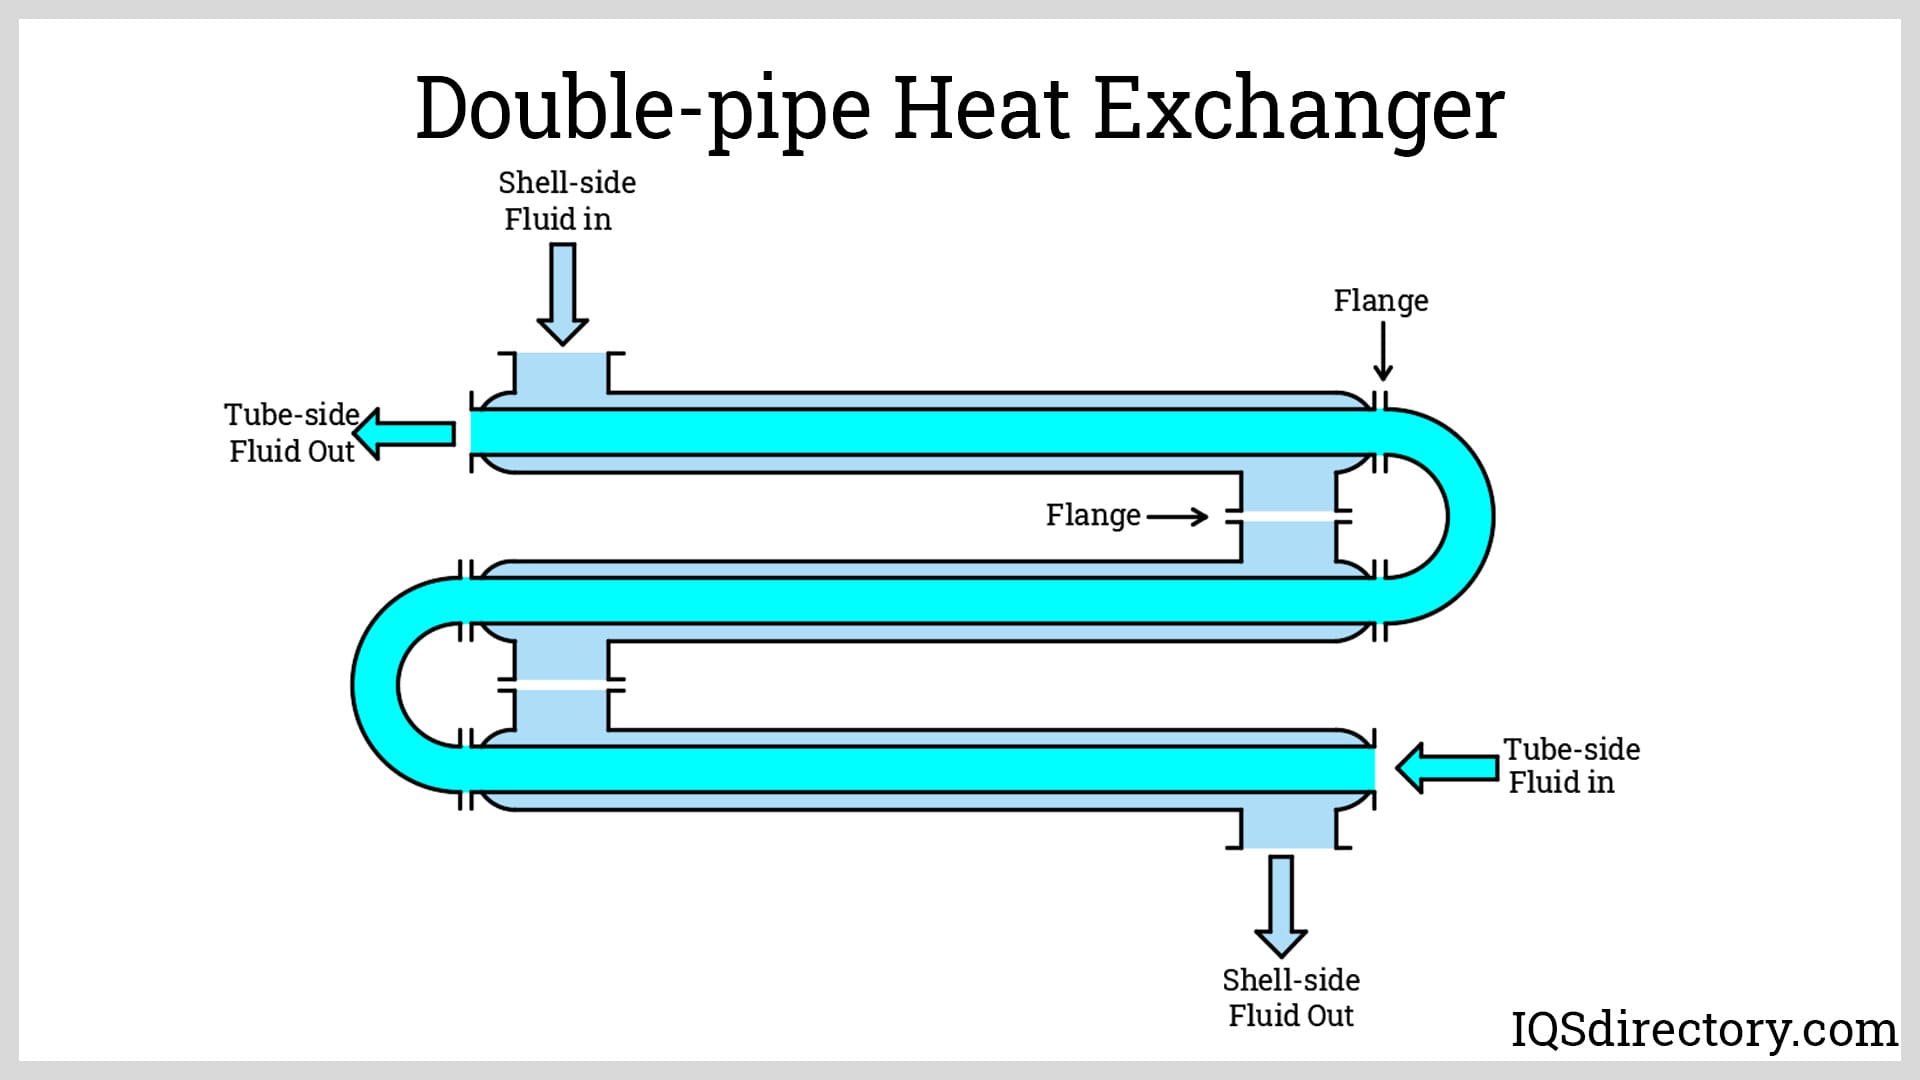 Double-pipe Heat Exchanger